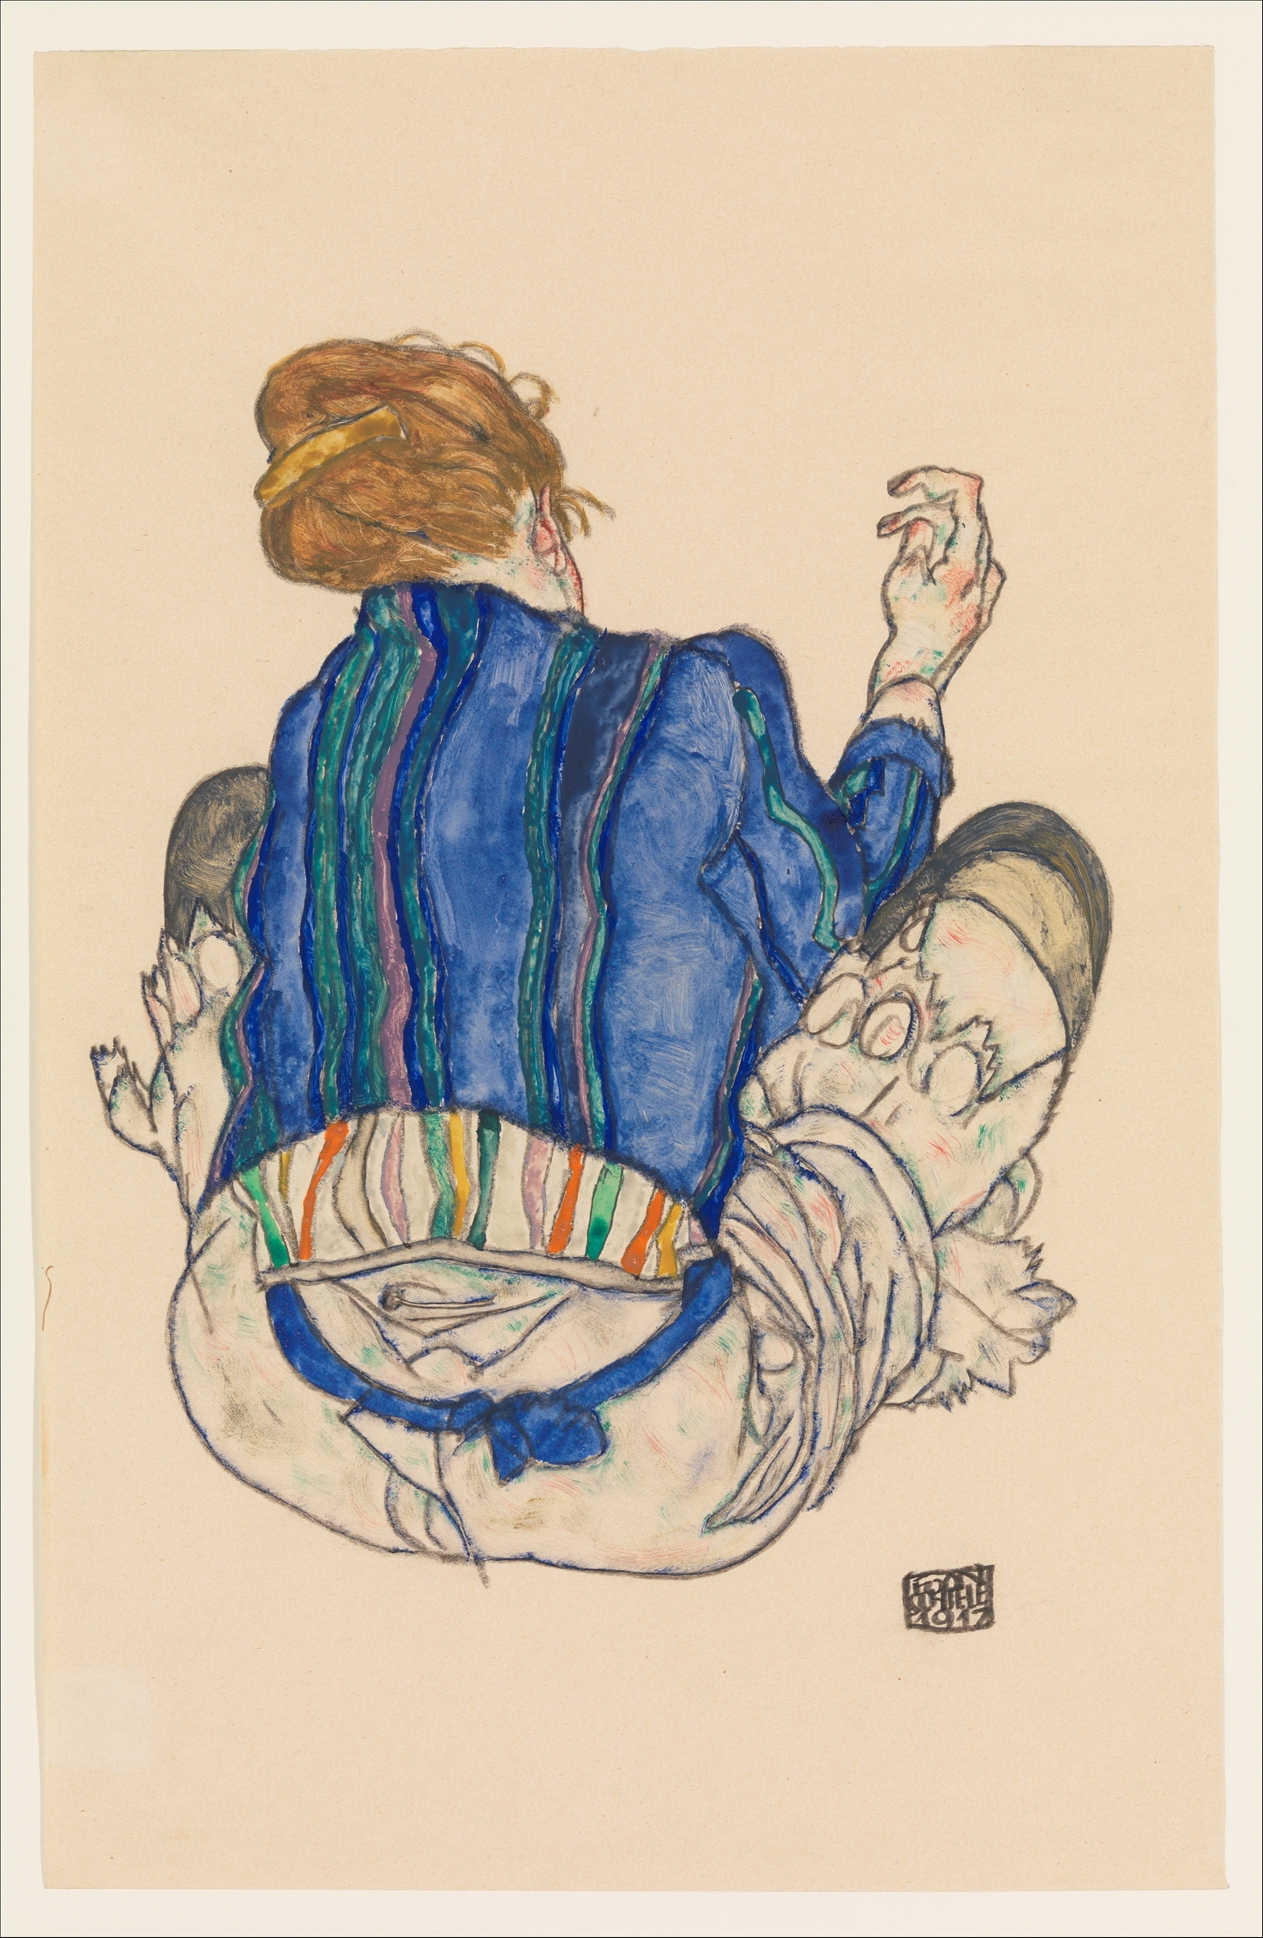 端坐女人背影 by Egon Schiele - 1917 - 46.4 x 29.8 公分 